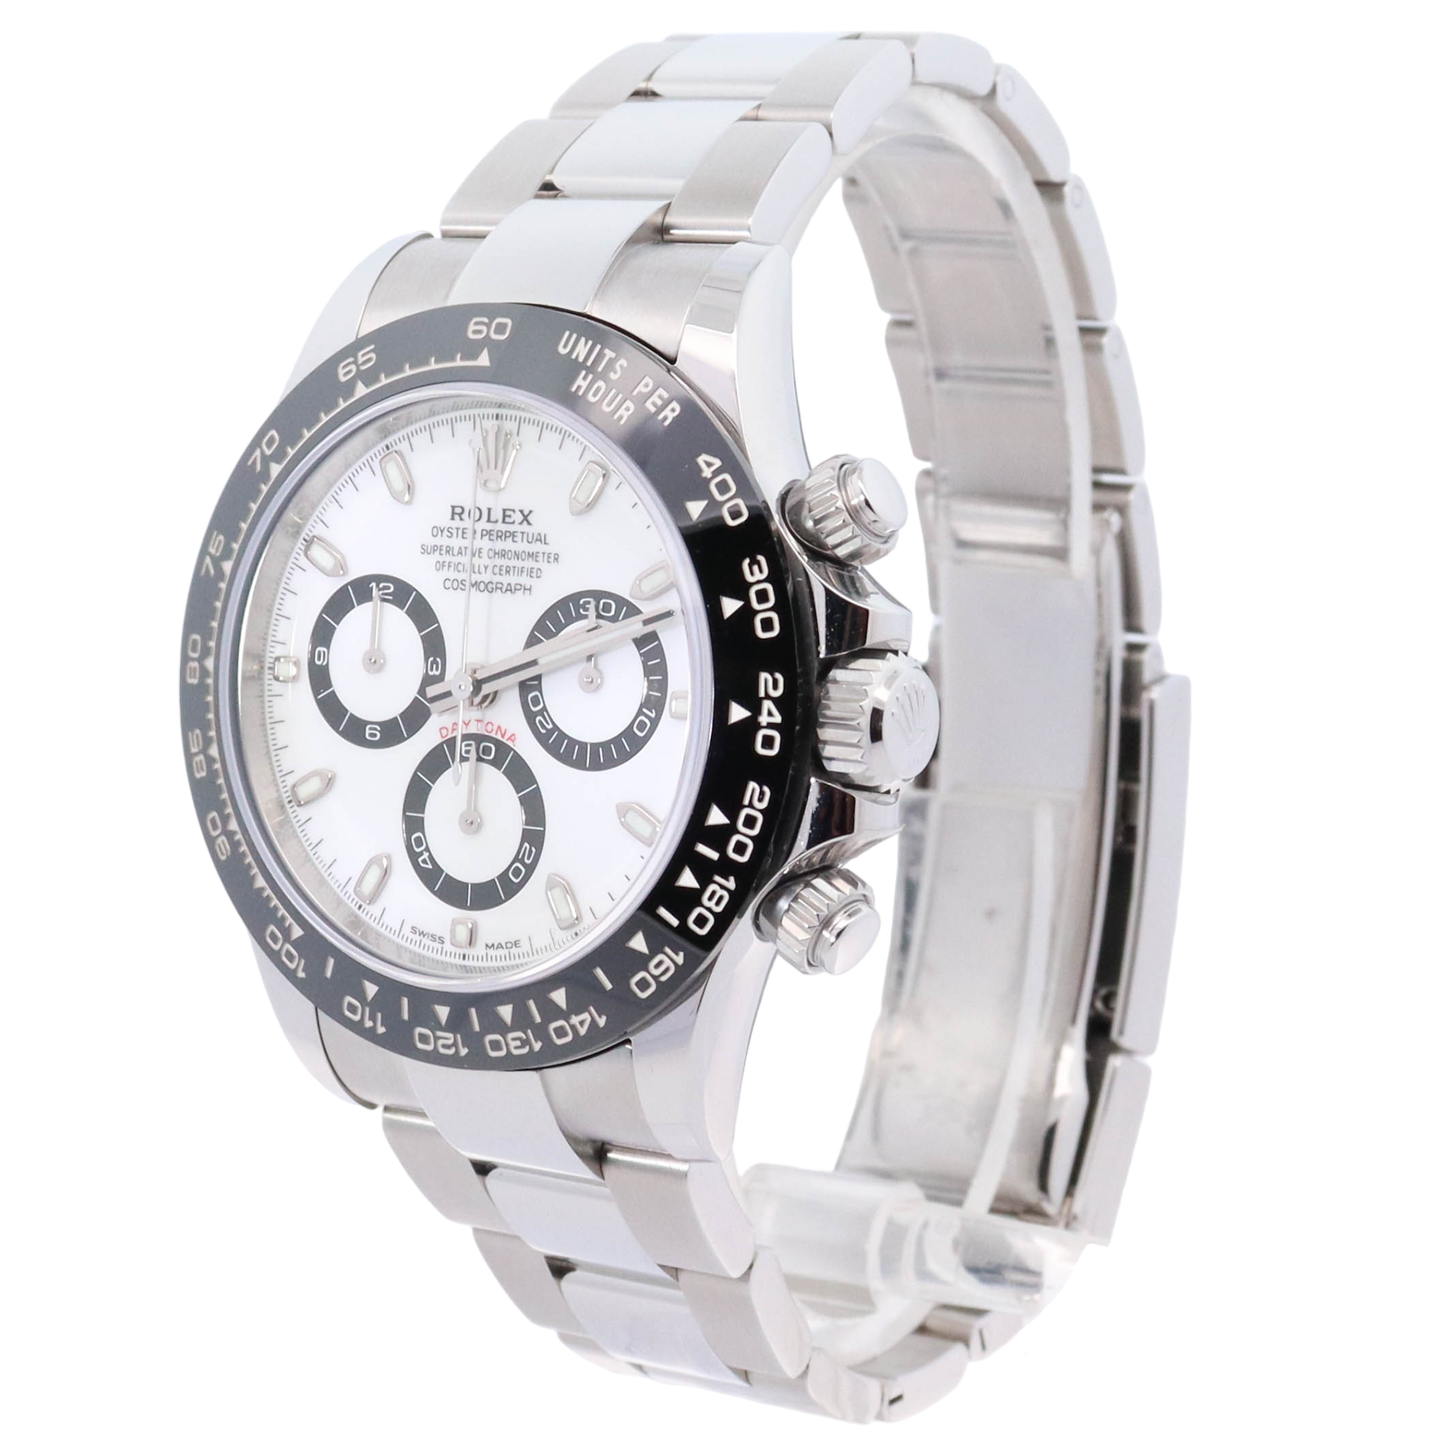 Rolex Daytona Stainless Steel 40mm White Stick Dial Watch Reference #: 116500LN - Happy Jewelers Fine Jewelry Lifetime Warranty